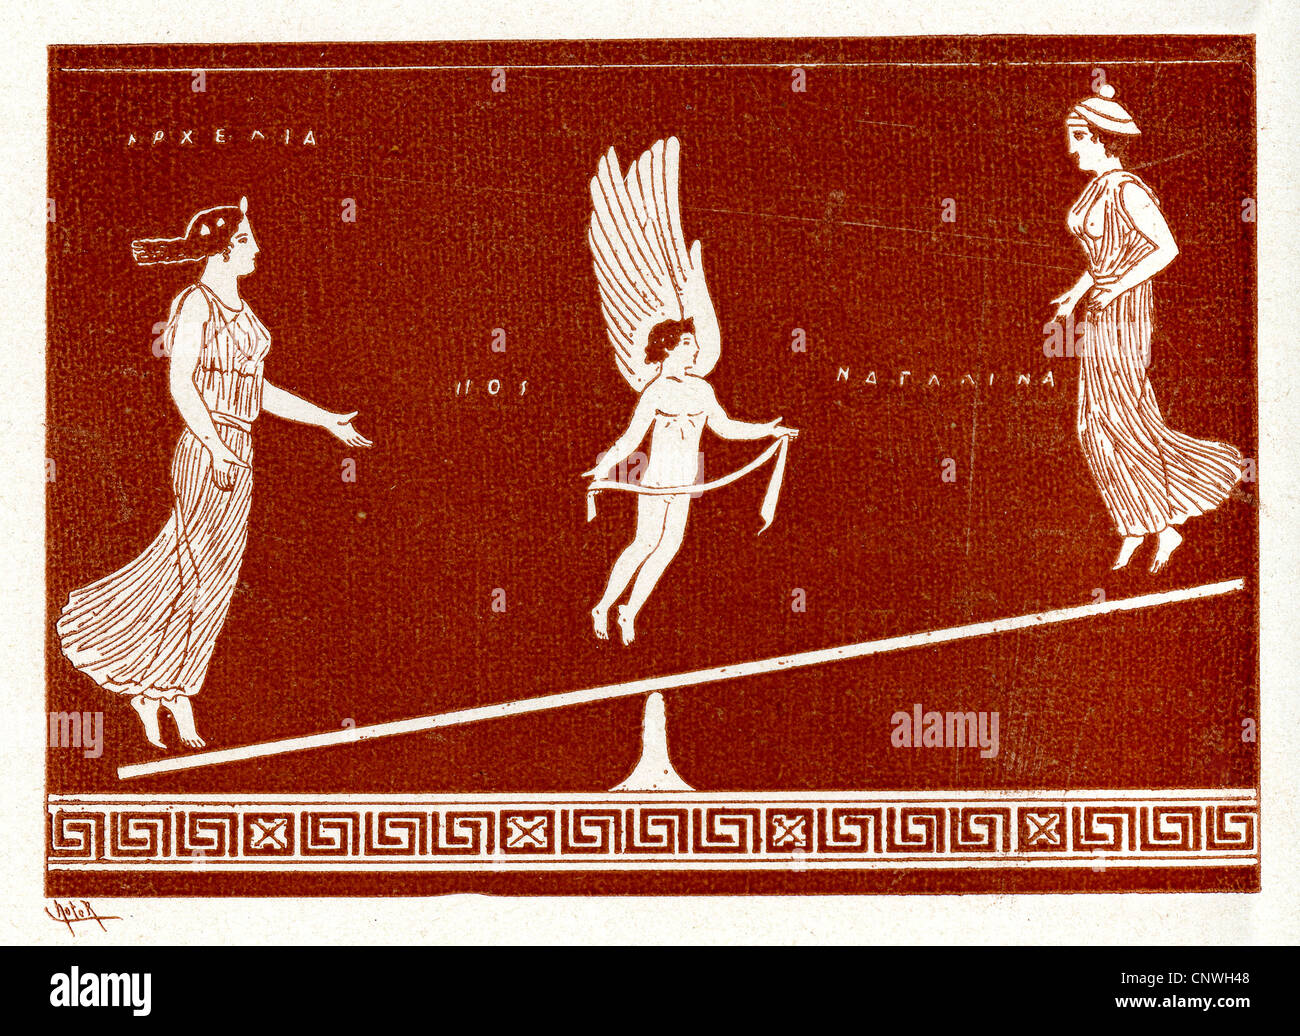 Una figura alada en el centro de un equilibrio entre dos mujeres griegas antiguas Foto de stock